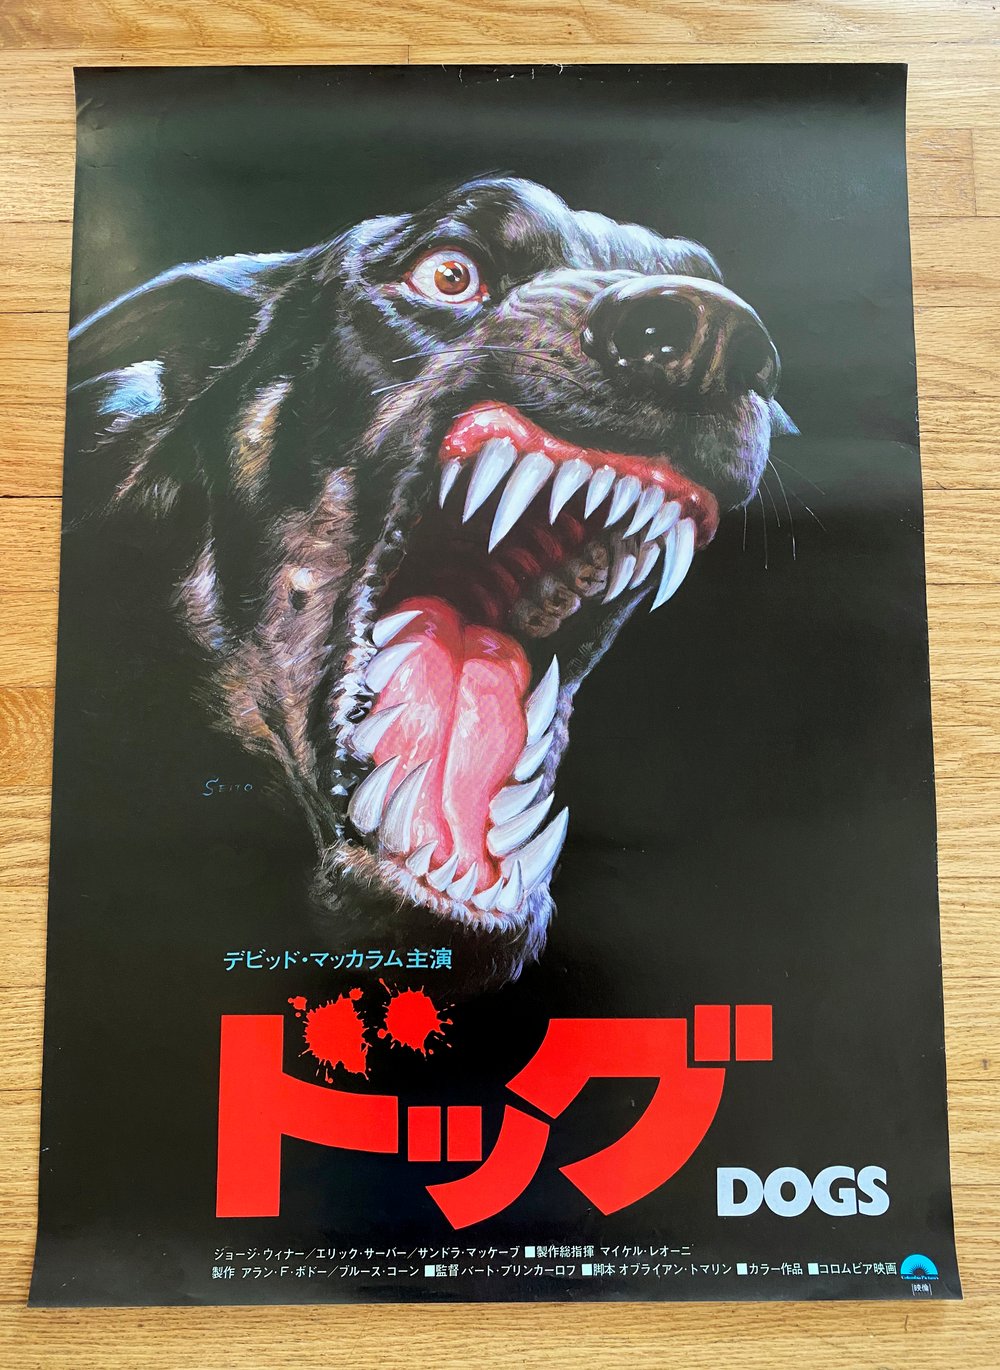 1977 DOGS Original Japanese B2 Movie Poster